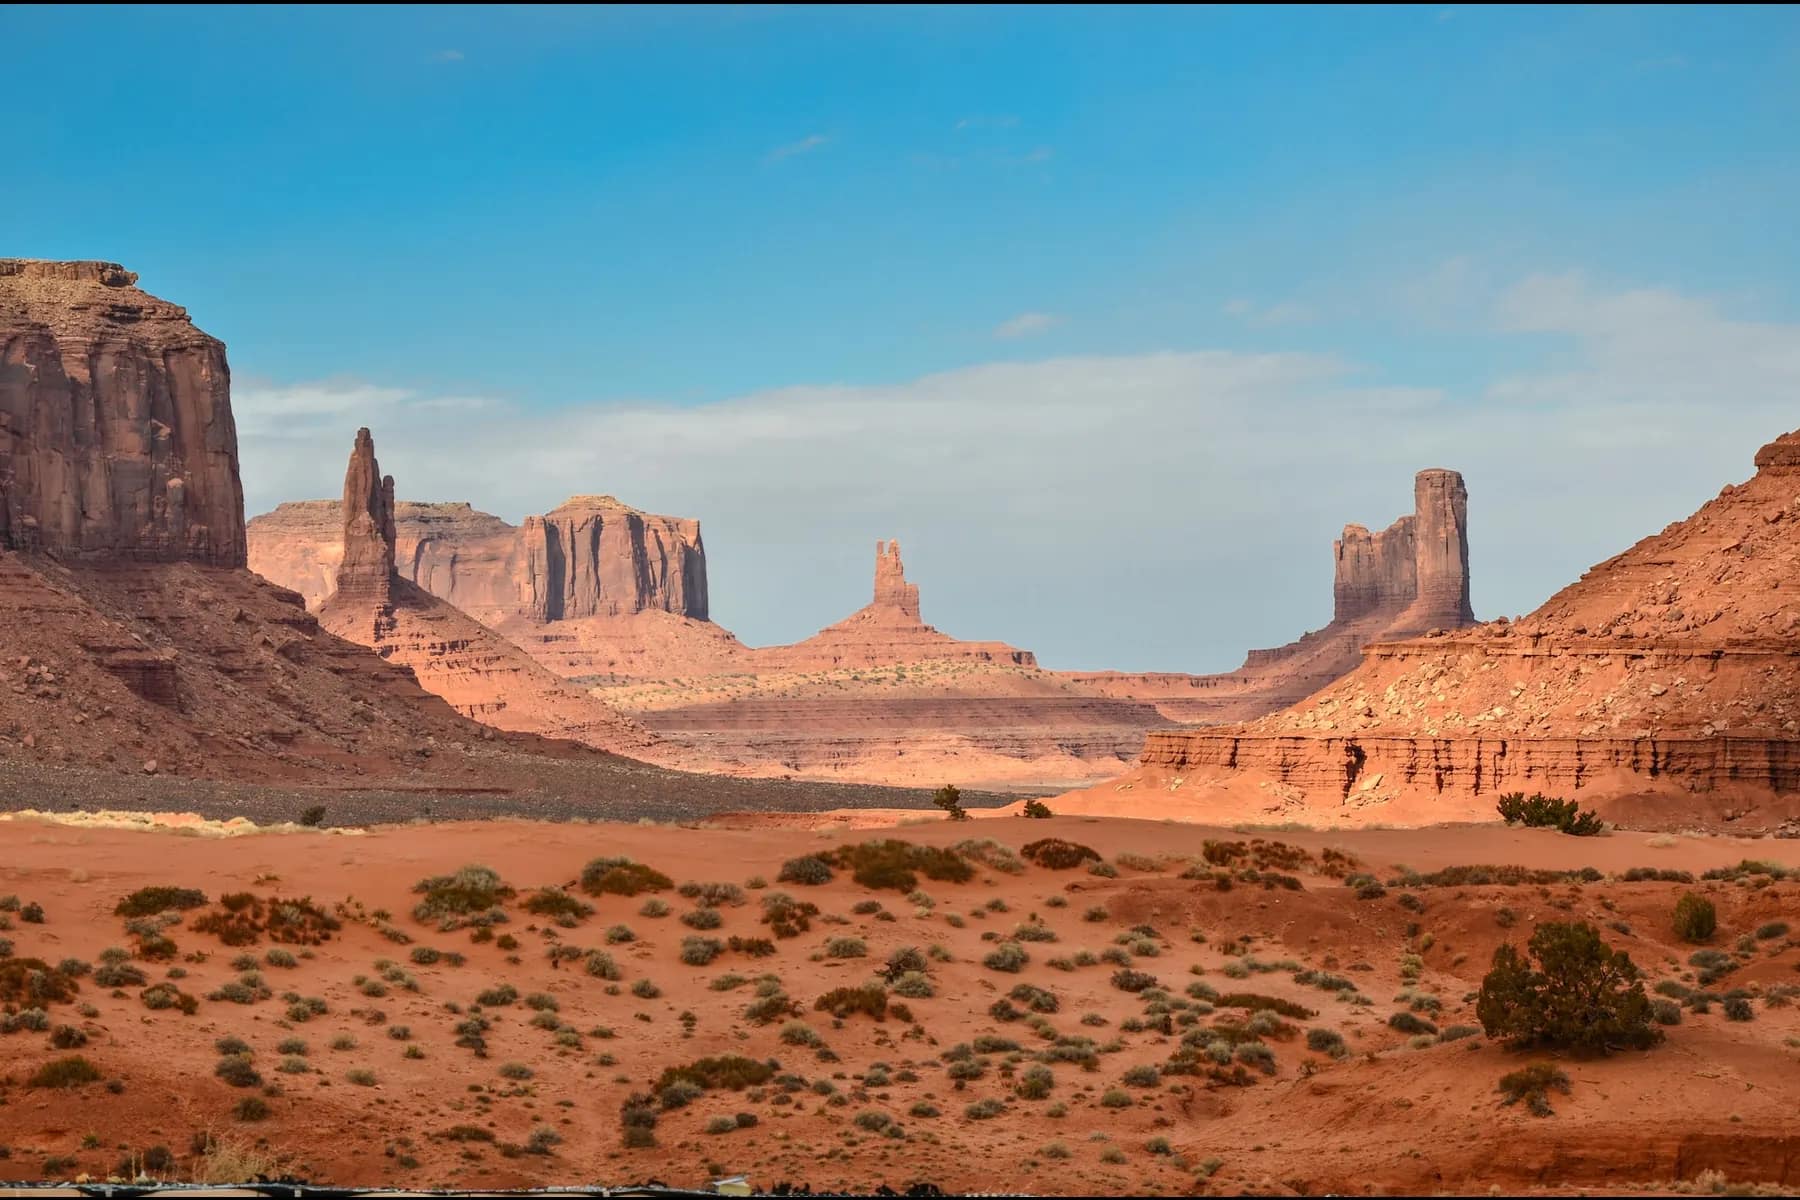 Image of Utah desert to convey desert camping in Utah